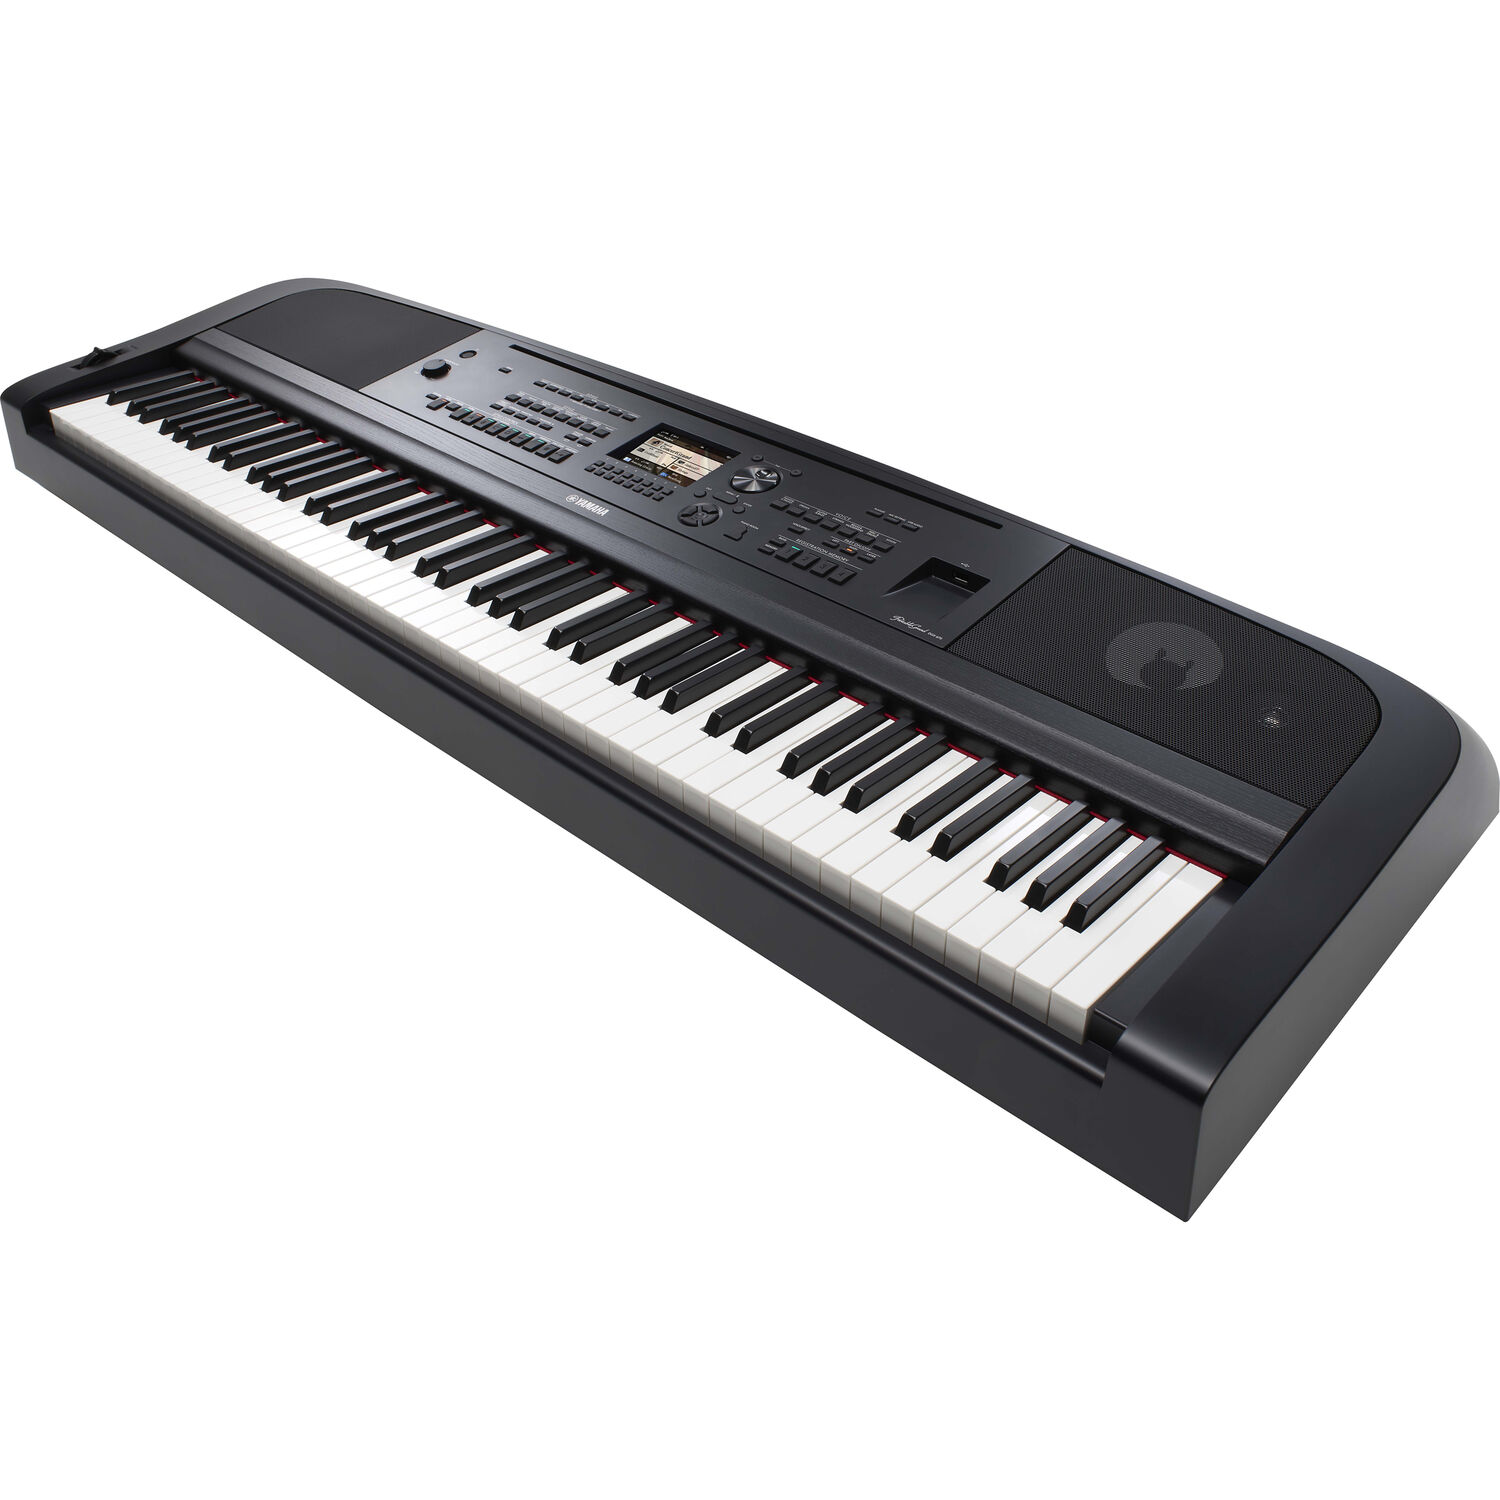 Piano Digital Portátil Yamaha Dgx 670 de 88 Teclas con Altavoces Negro